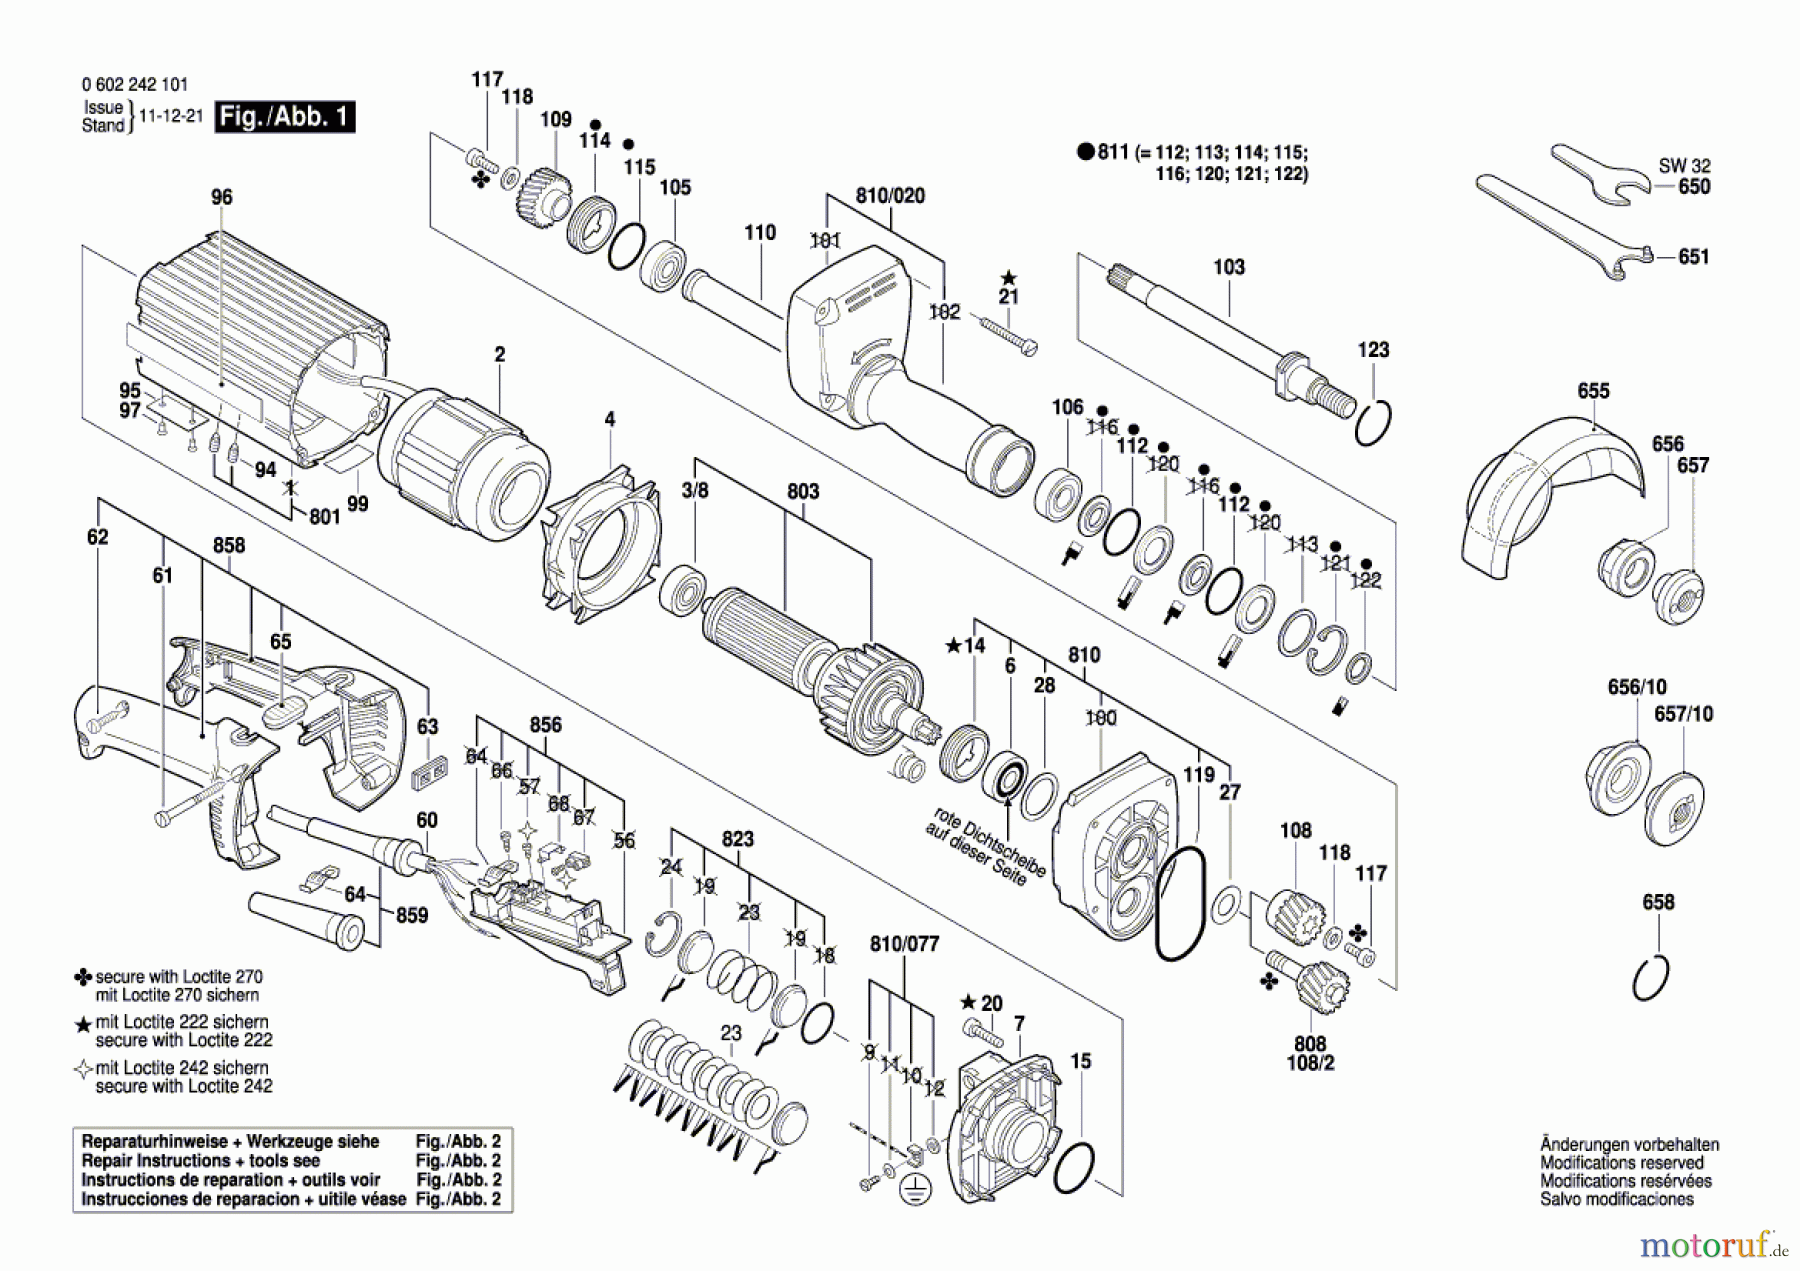  Bosch Werkzeug Hf-Geradschleifer GERADSCHLEIFER 2 242 Seite 1